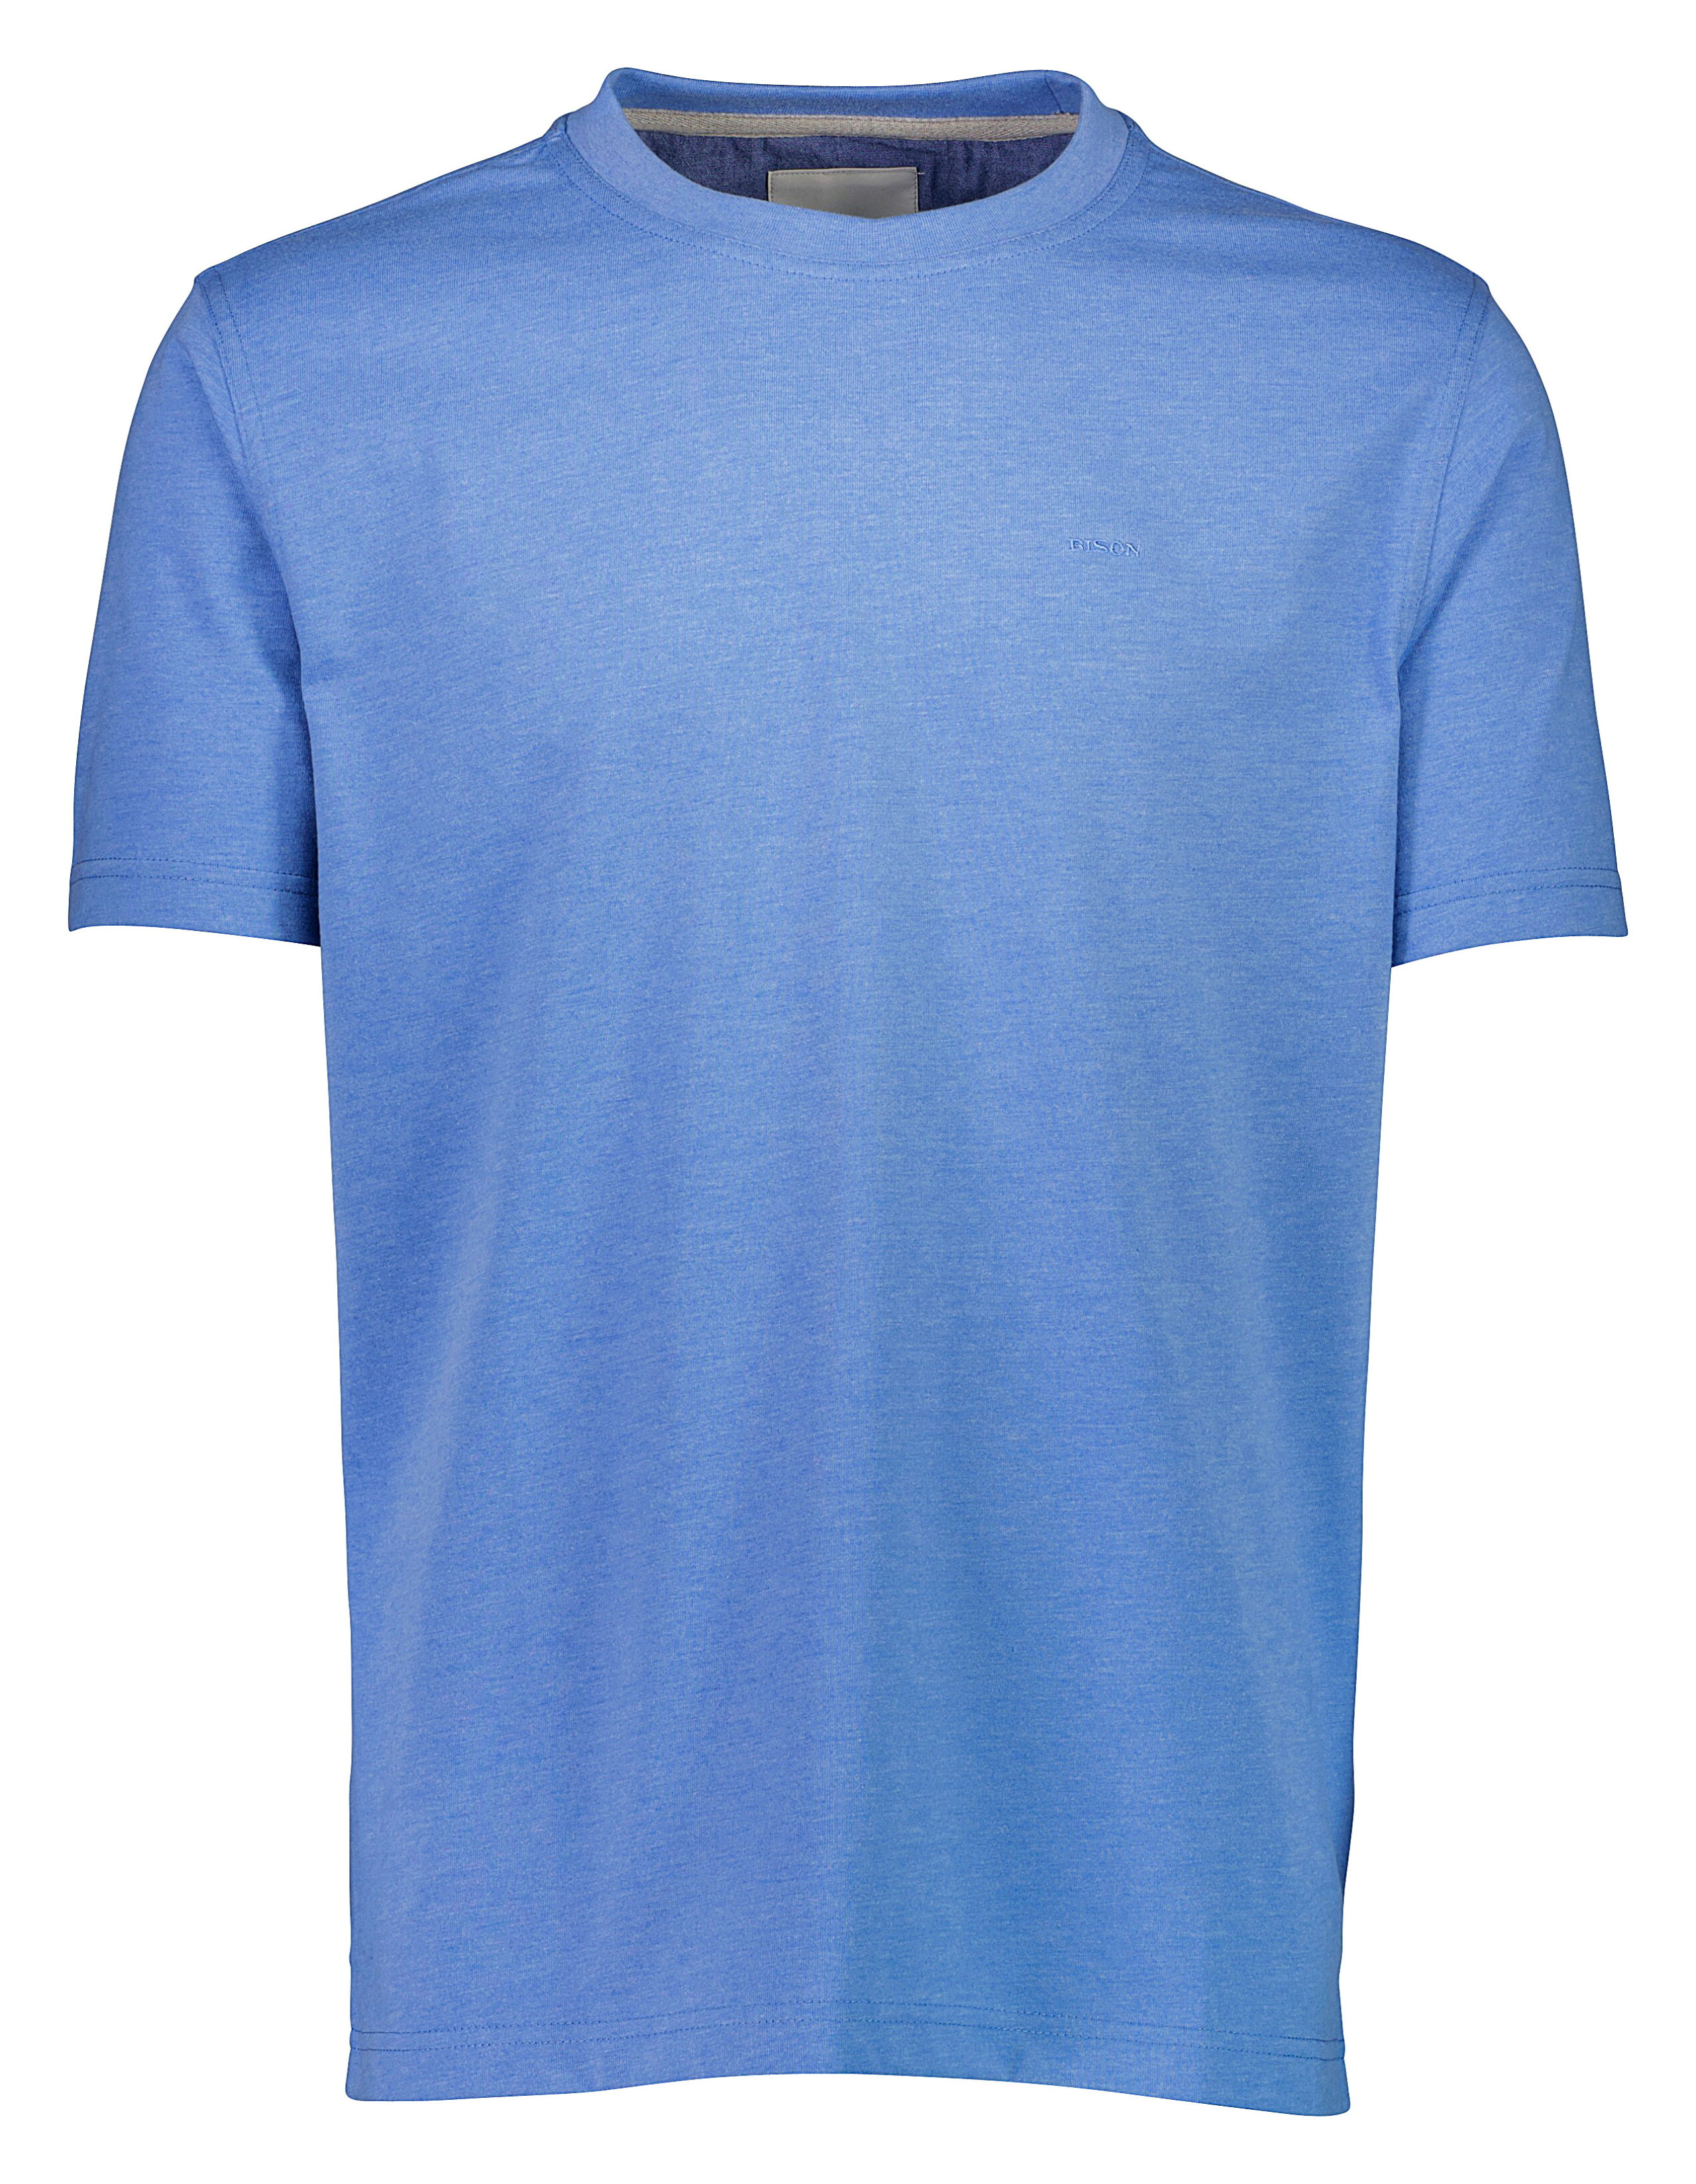 Bison T-shirt blå / lt blue mel